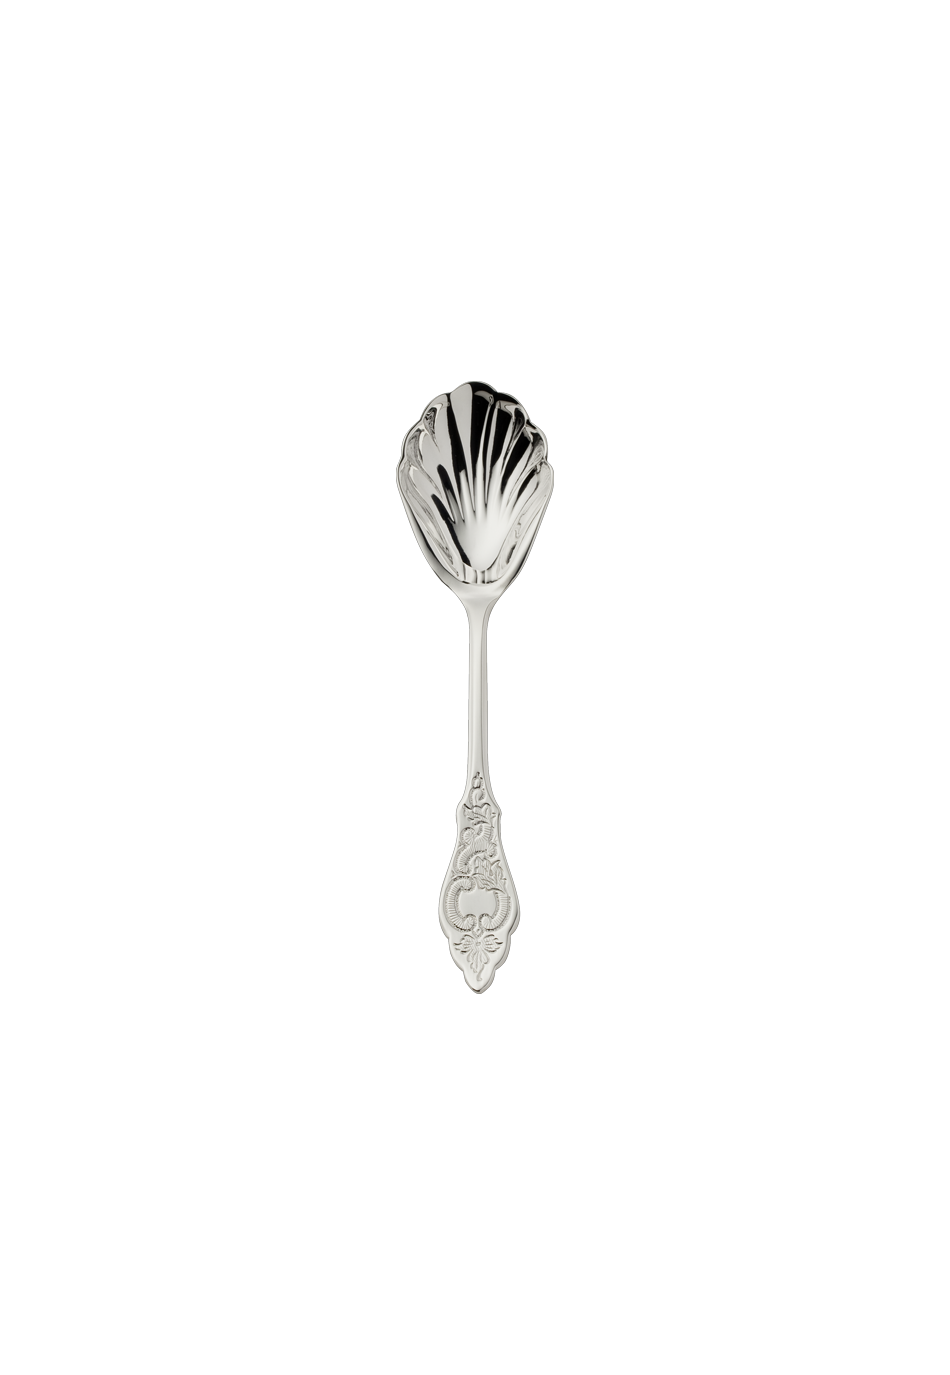 Ostfriesen Sugar Spoon (150g massive silverplated)